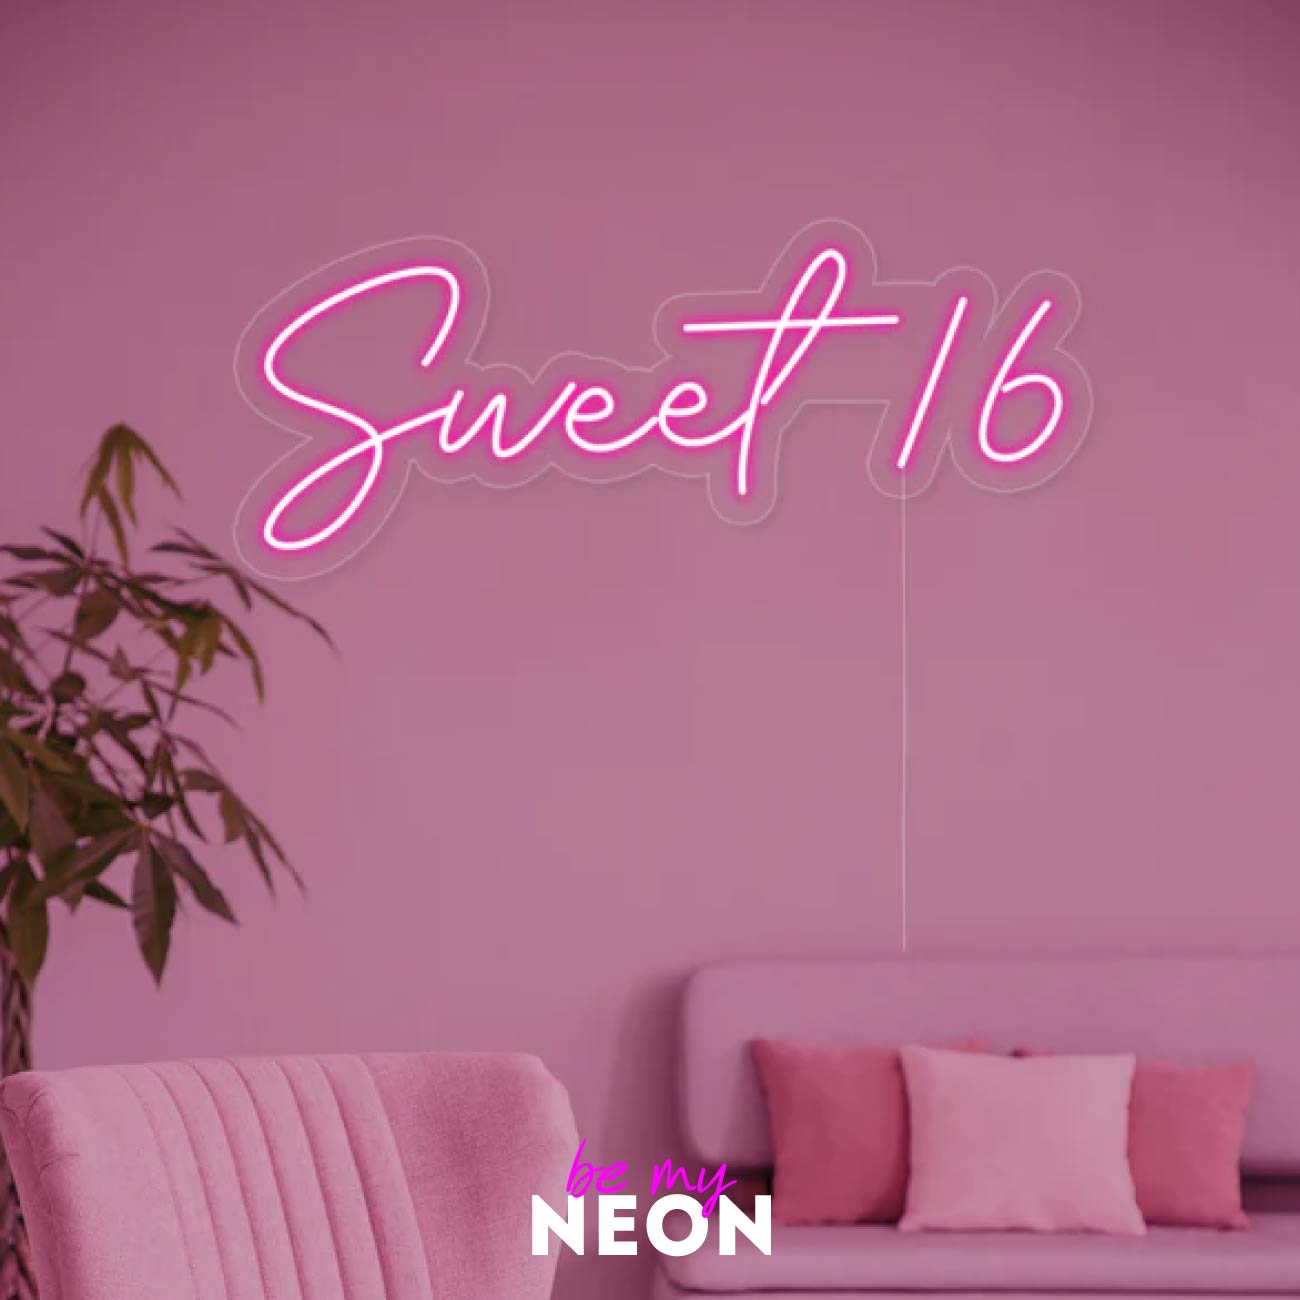 "Sweet 16 Geburtstag" Leuchtmotiv aus LED Neon